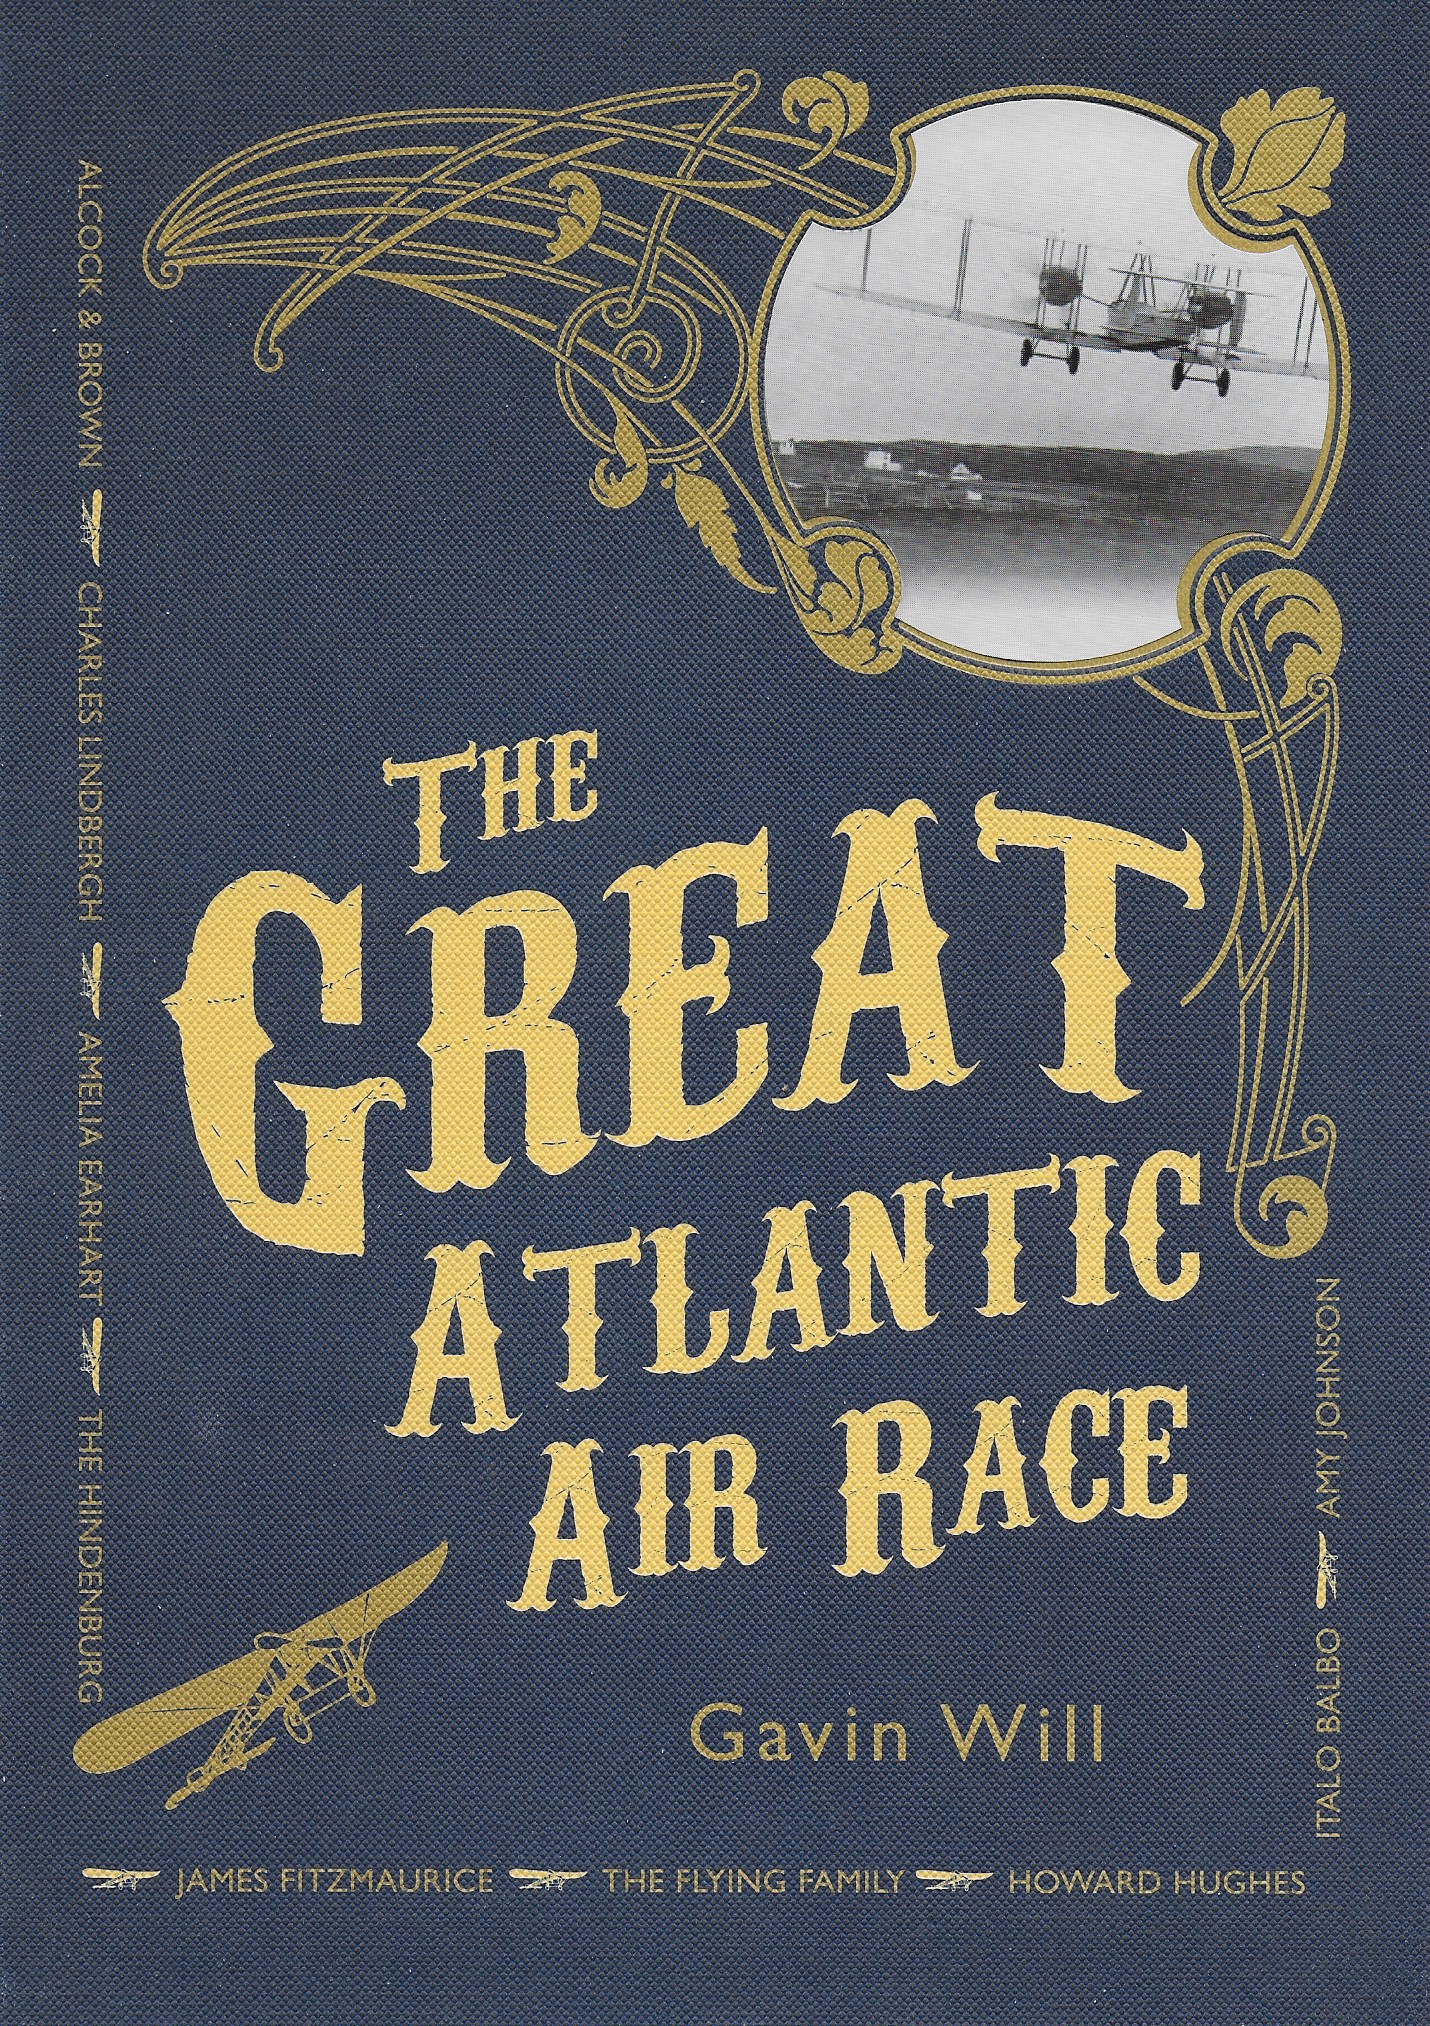 The Great Atlantic Air Race